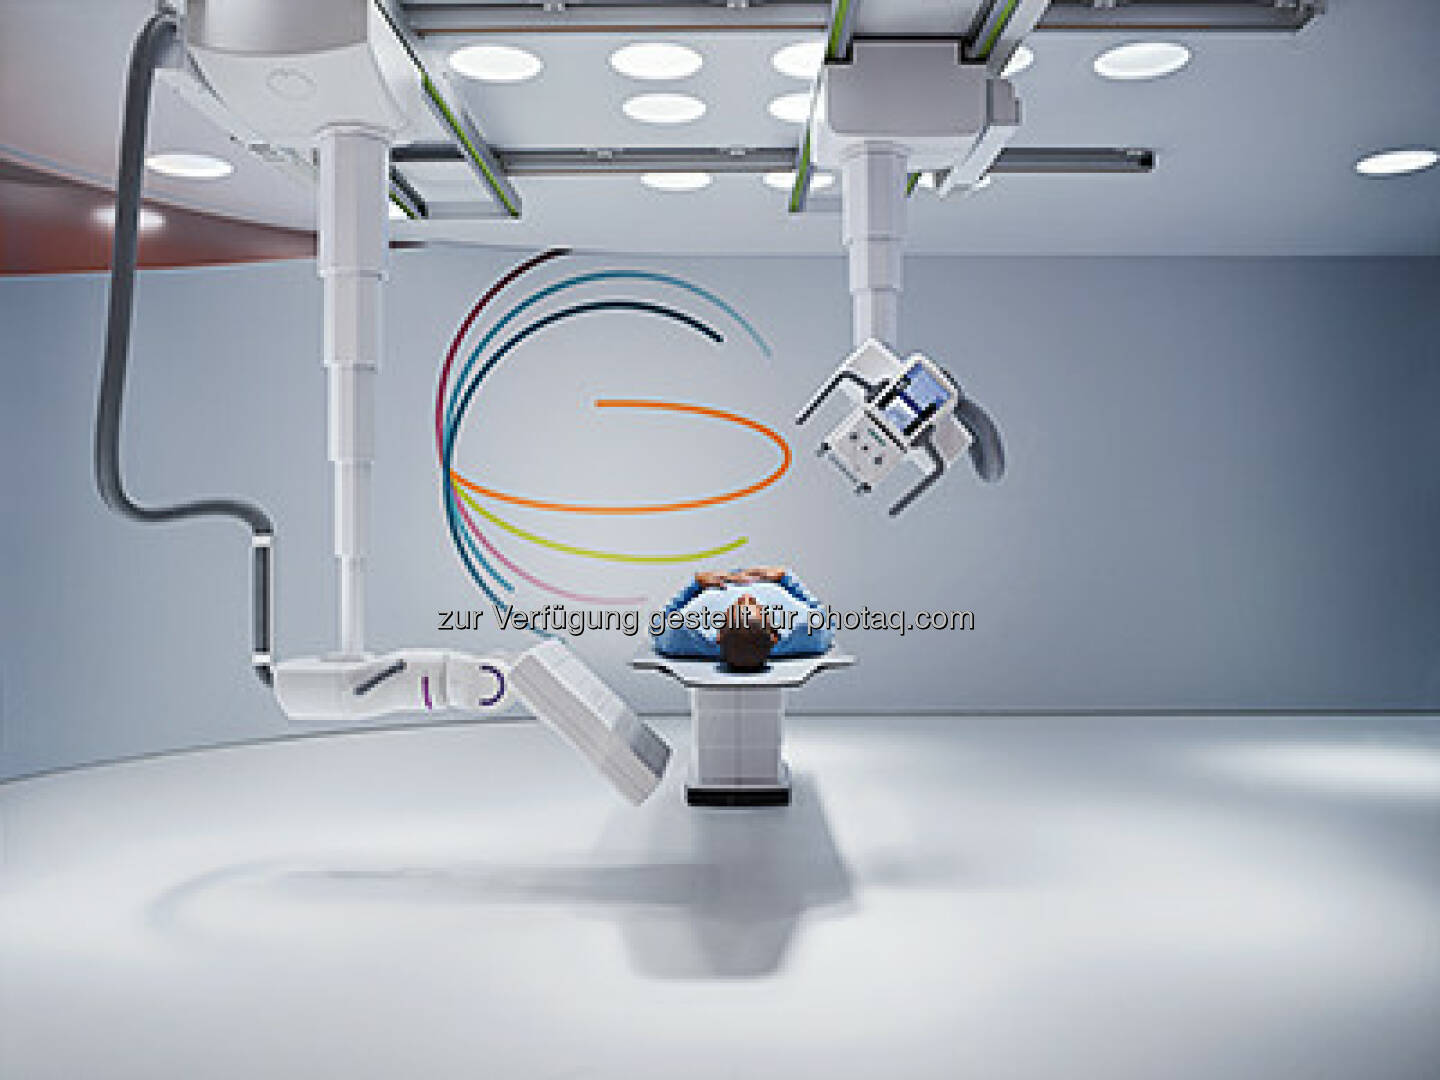 Siemens Healthcare präsentiert erstes Roboter-basiertes Röntgenssystem : Multitom Rax begründet eine neue Kategorie in der medizinischen Bildgebung dank verschiedenster Untersuchungsmöglichkeiten in Radiographie, Orthopädie, Angiographie, Fluoroskopie und zur Bildgebung in der Notfallmedizin : Roboterarme für exakte Positionierung von Röhre und Detektor, die erstmals 3D-Röntgenaufnahmen aller Körperregionen unter natürlicher Gewichtsbelastung möglich machen : 	© Siemens AG